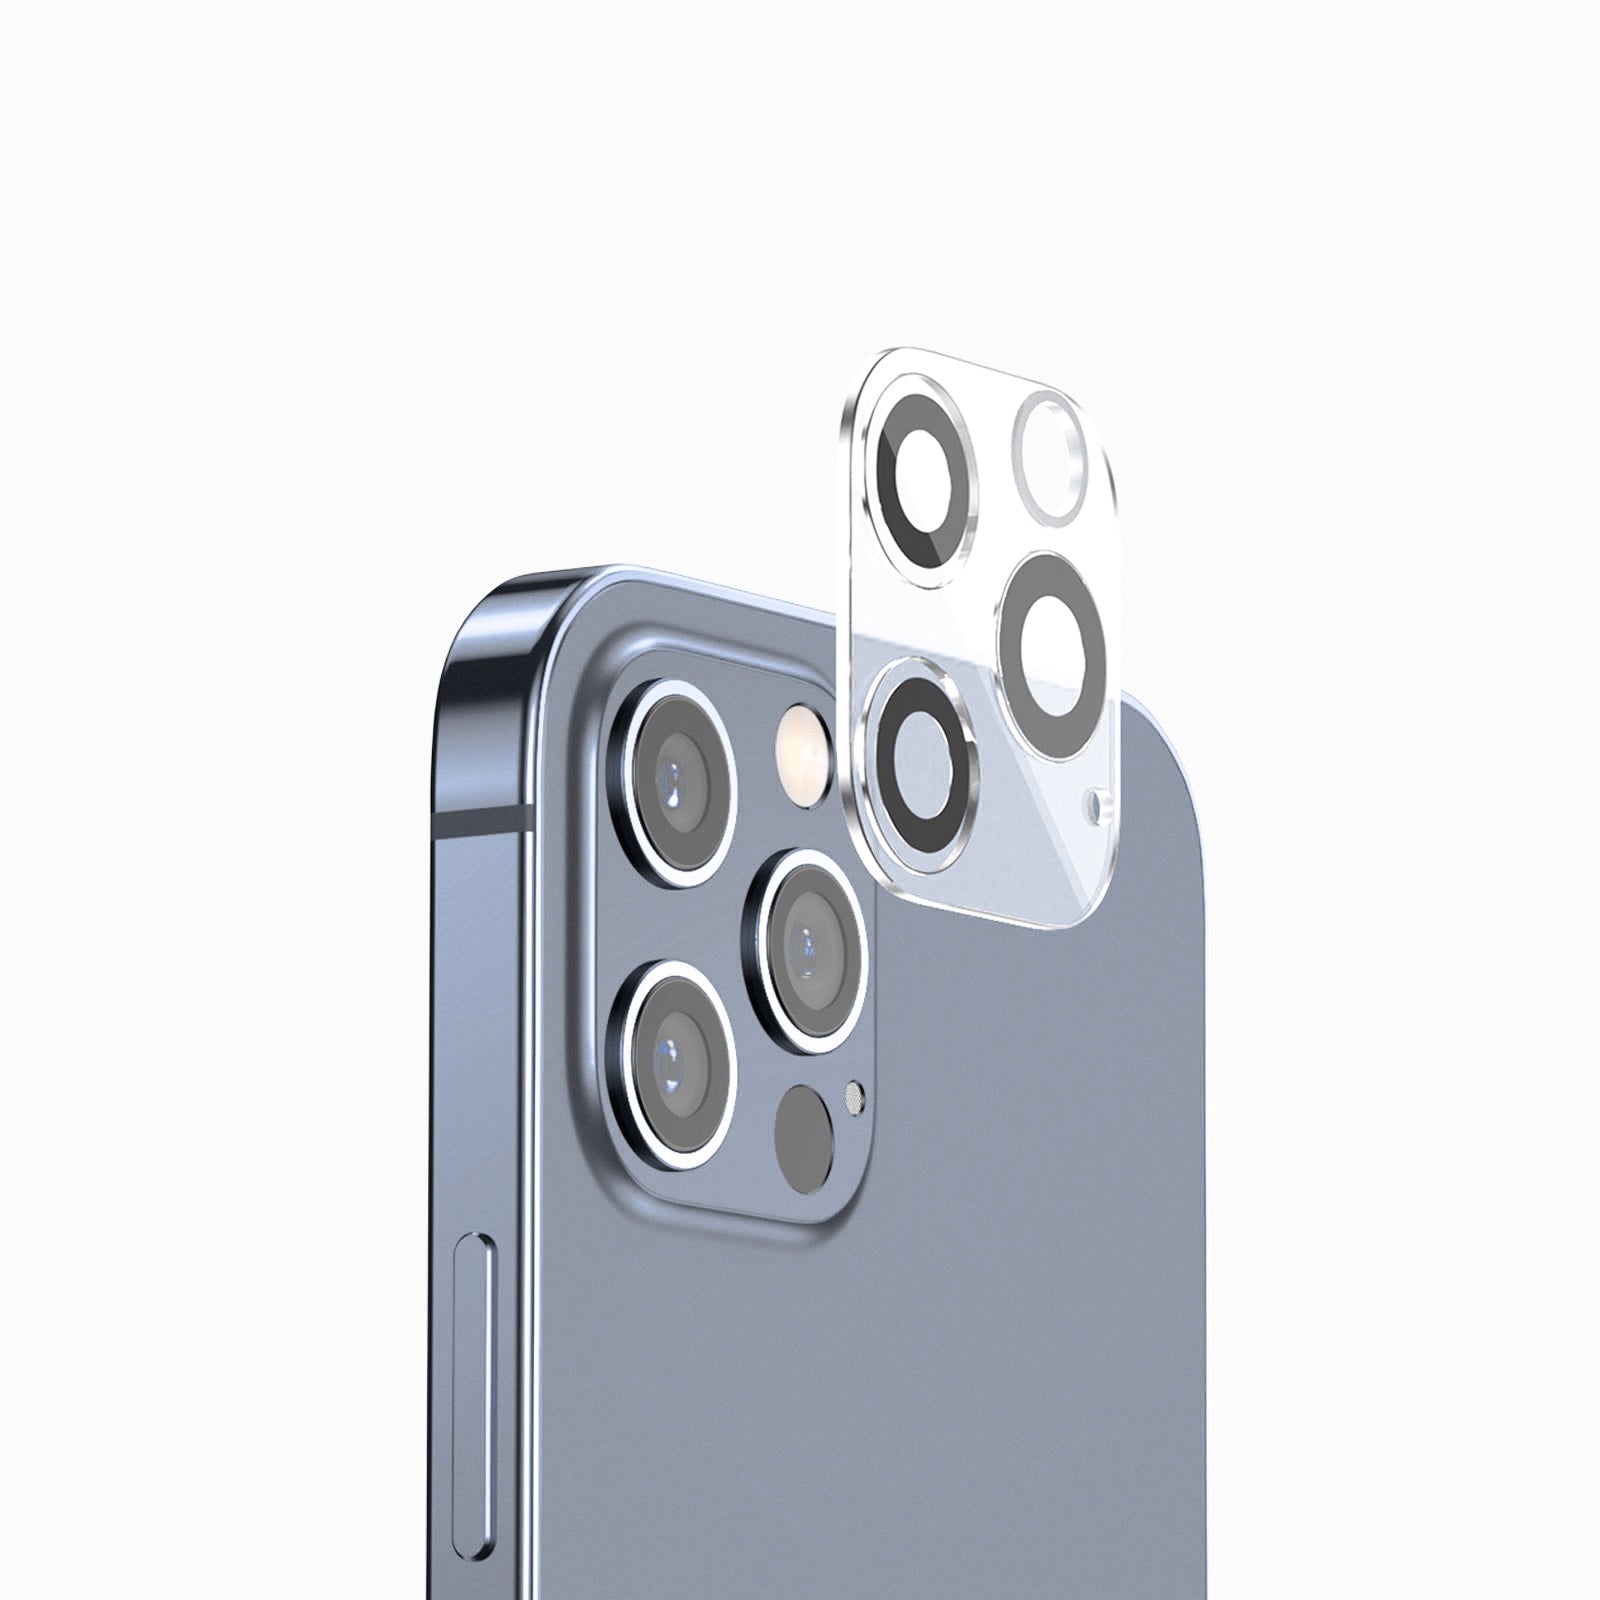 FLOLAB I Best iPhone 14 Pro Max Camera Protectors